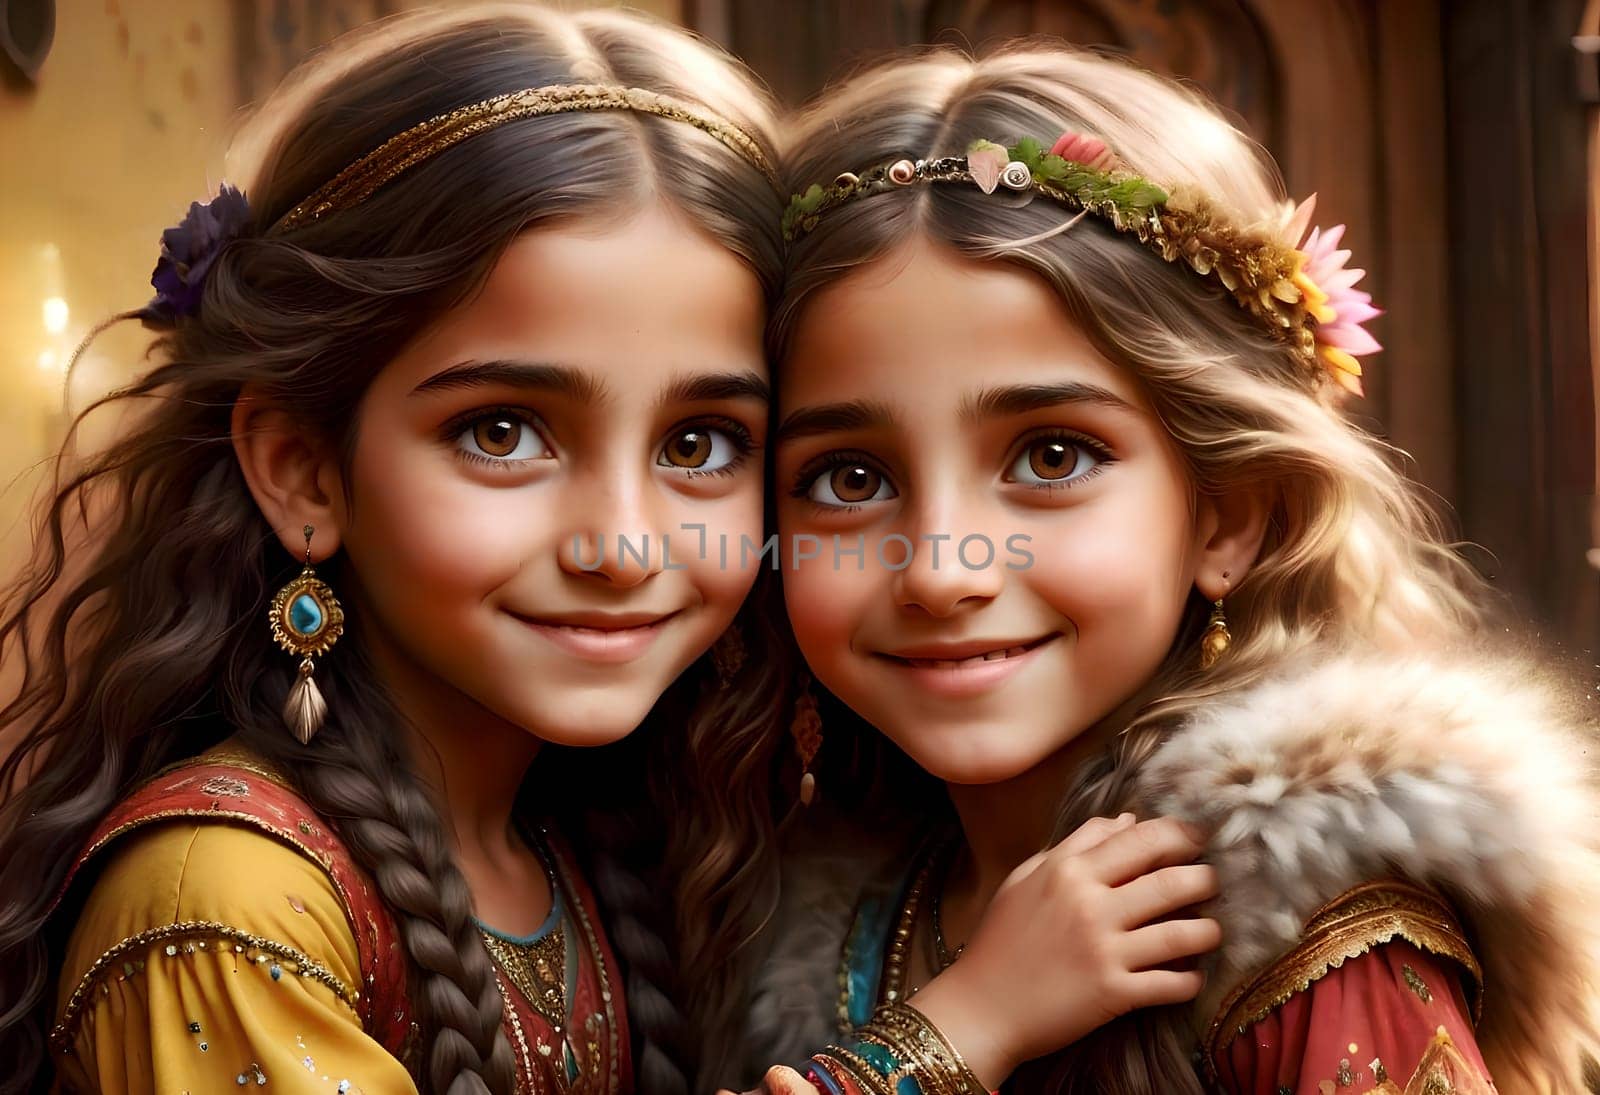 Beautiful gypsy children in elegant gypsy costumes by Rawlik